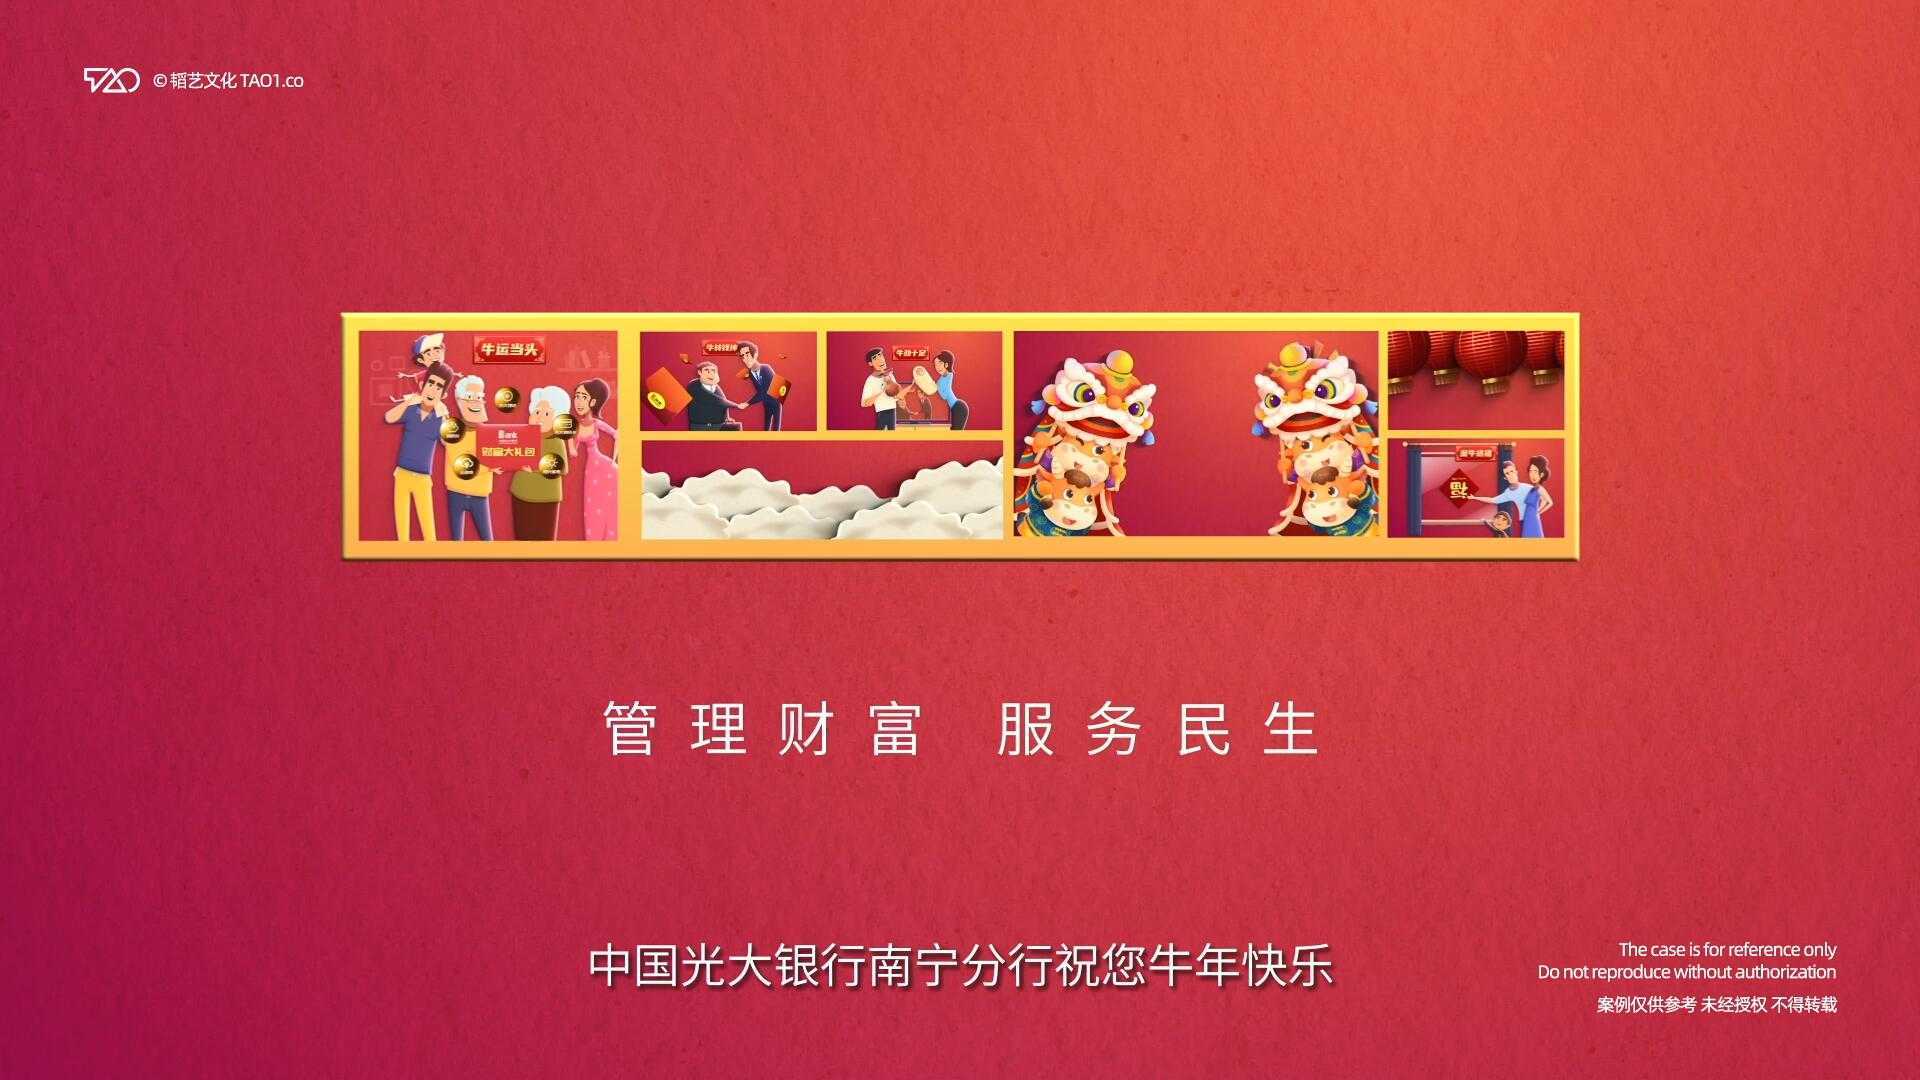 [原创动画制作] 中国光大银行南宁分行 新春祝福 宣传片